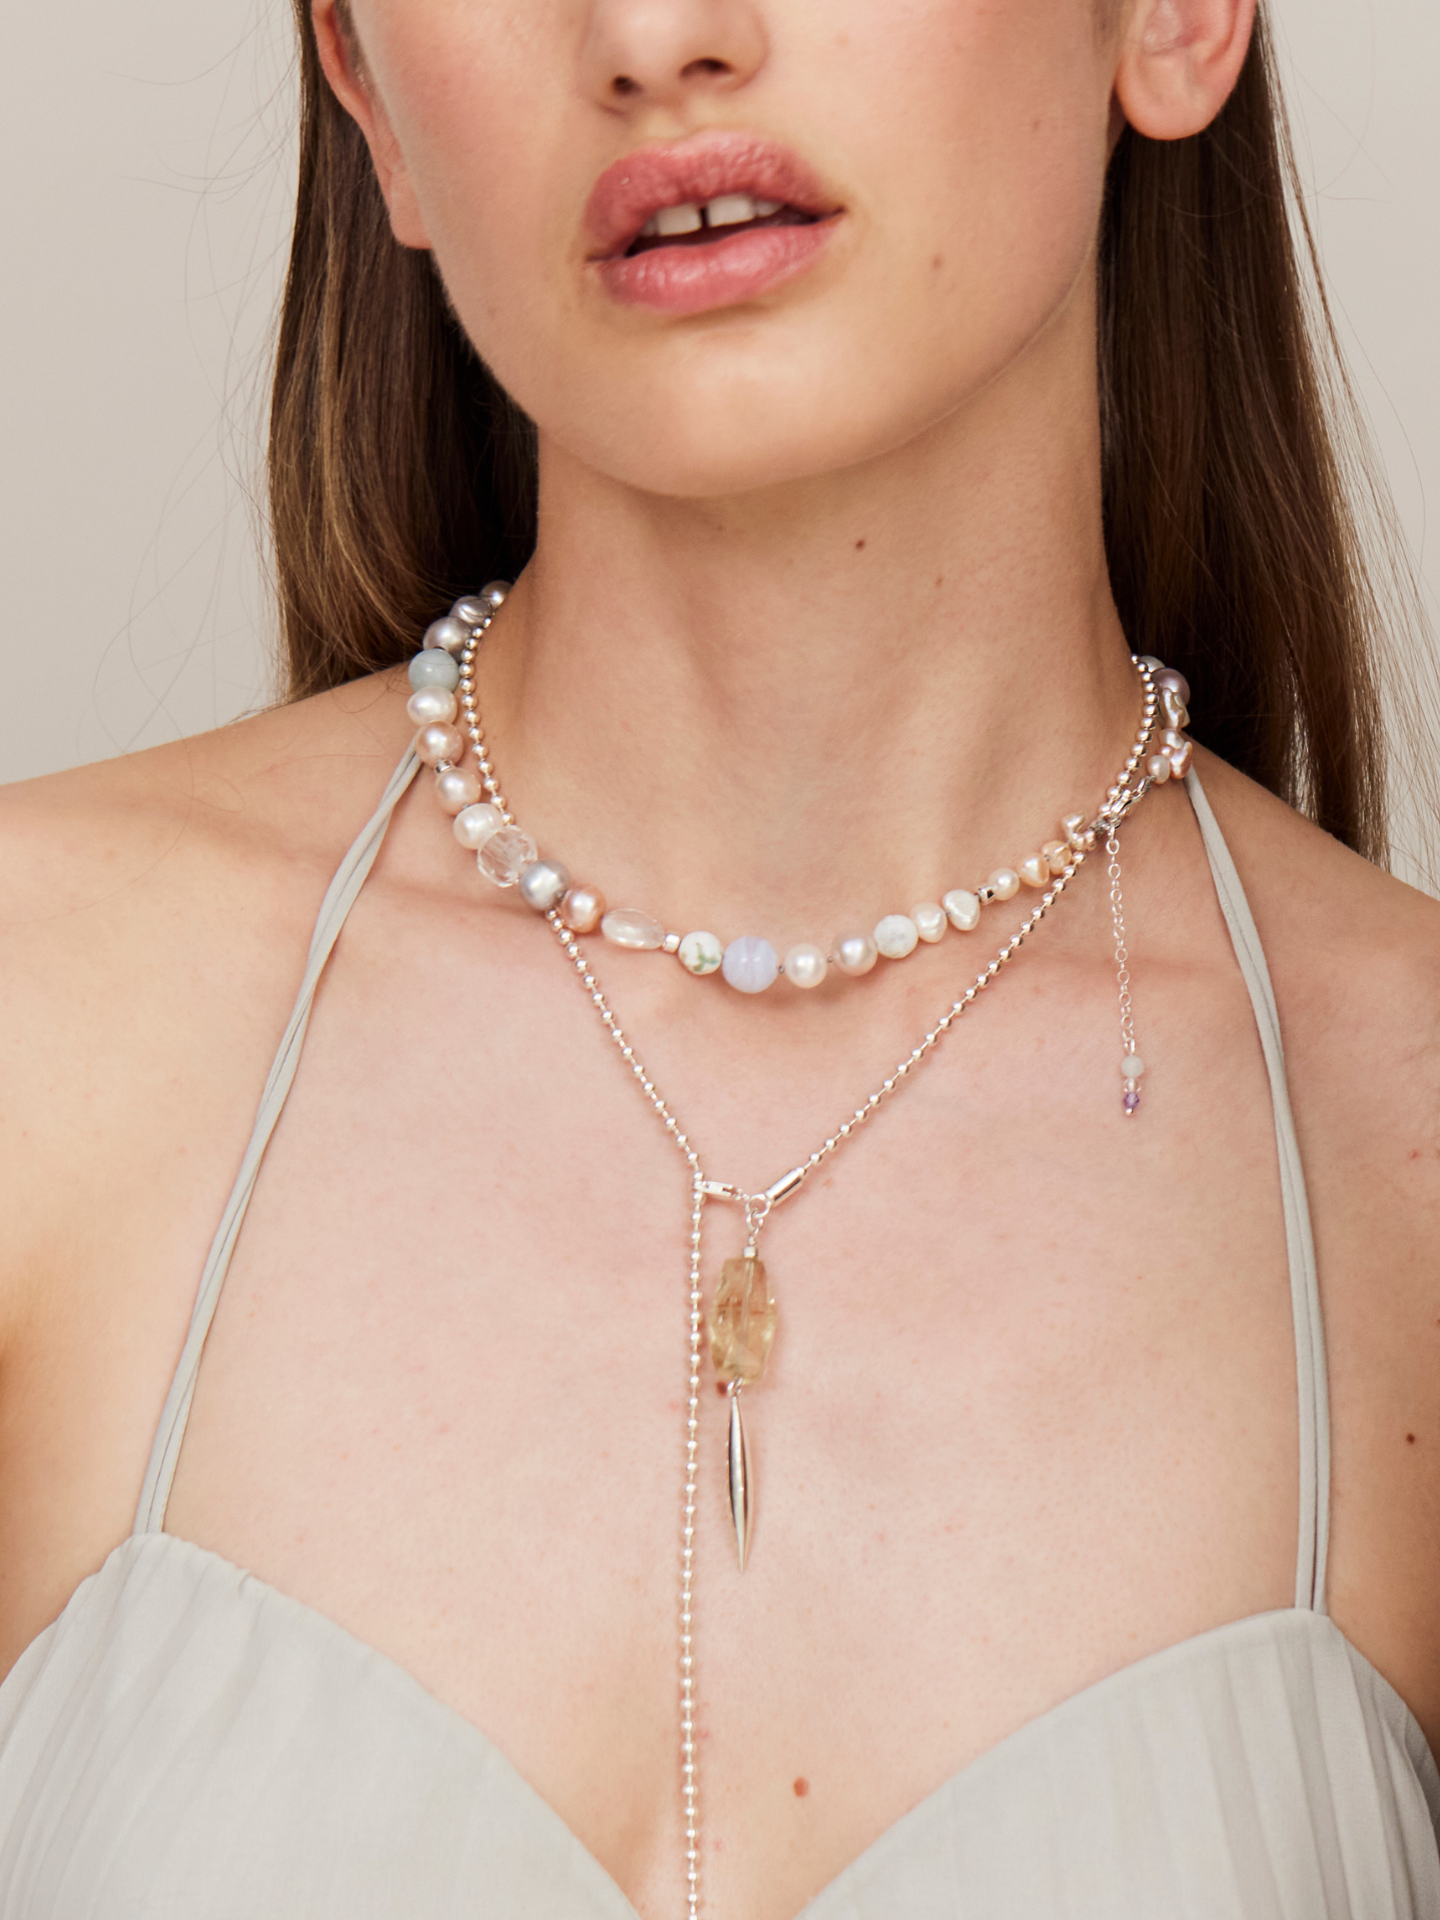 Attraktive Frau mit sinnlichen Lippen trägt ein helles, schulterfreies Kleid und eine Kombi aus einer Perlenkette und einer zarten Halskette mit einem aufregenden Anhänger